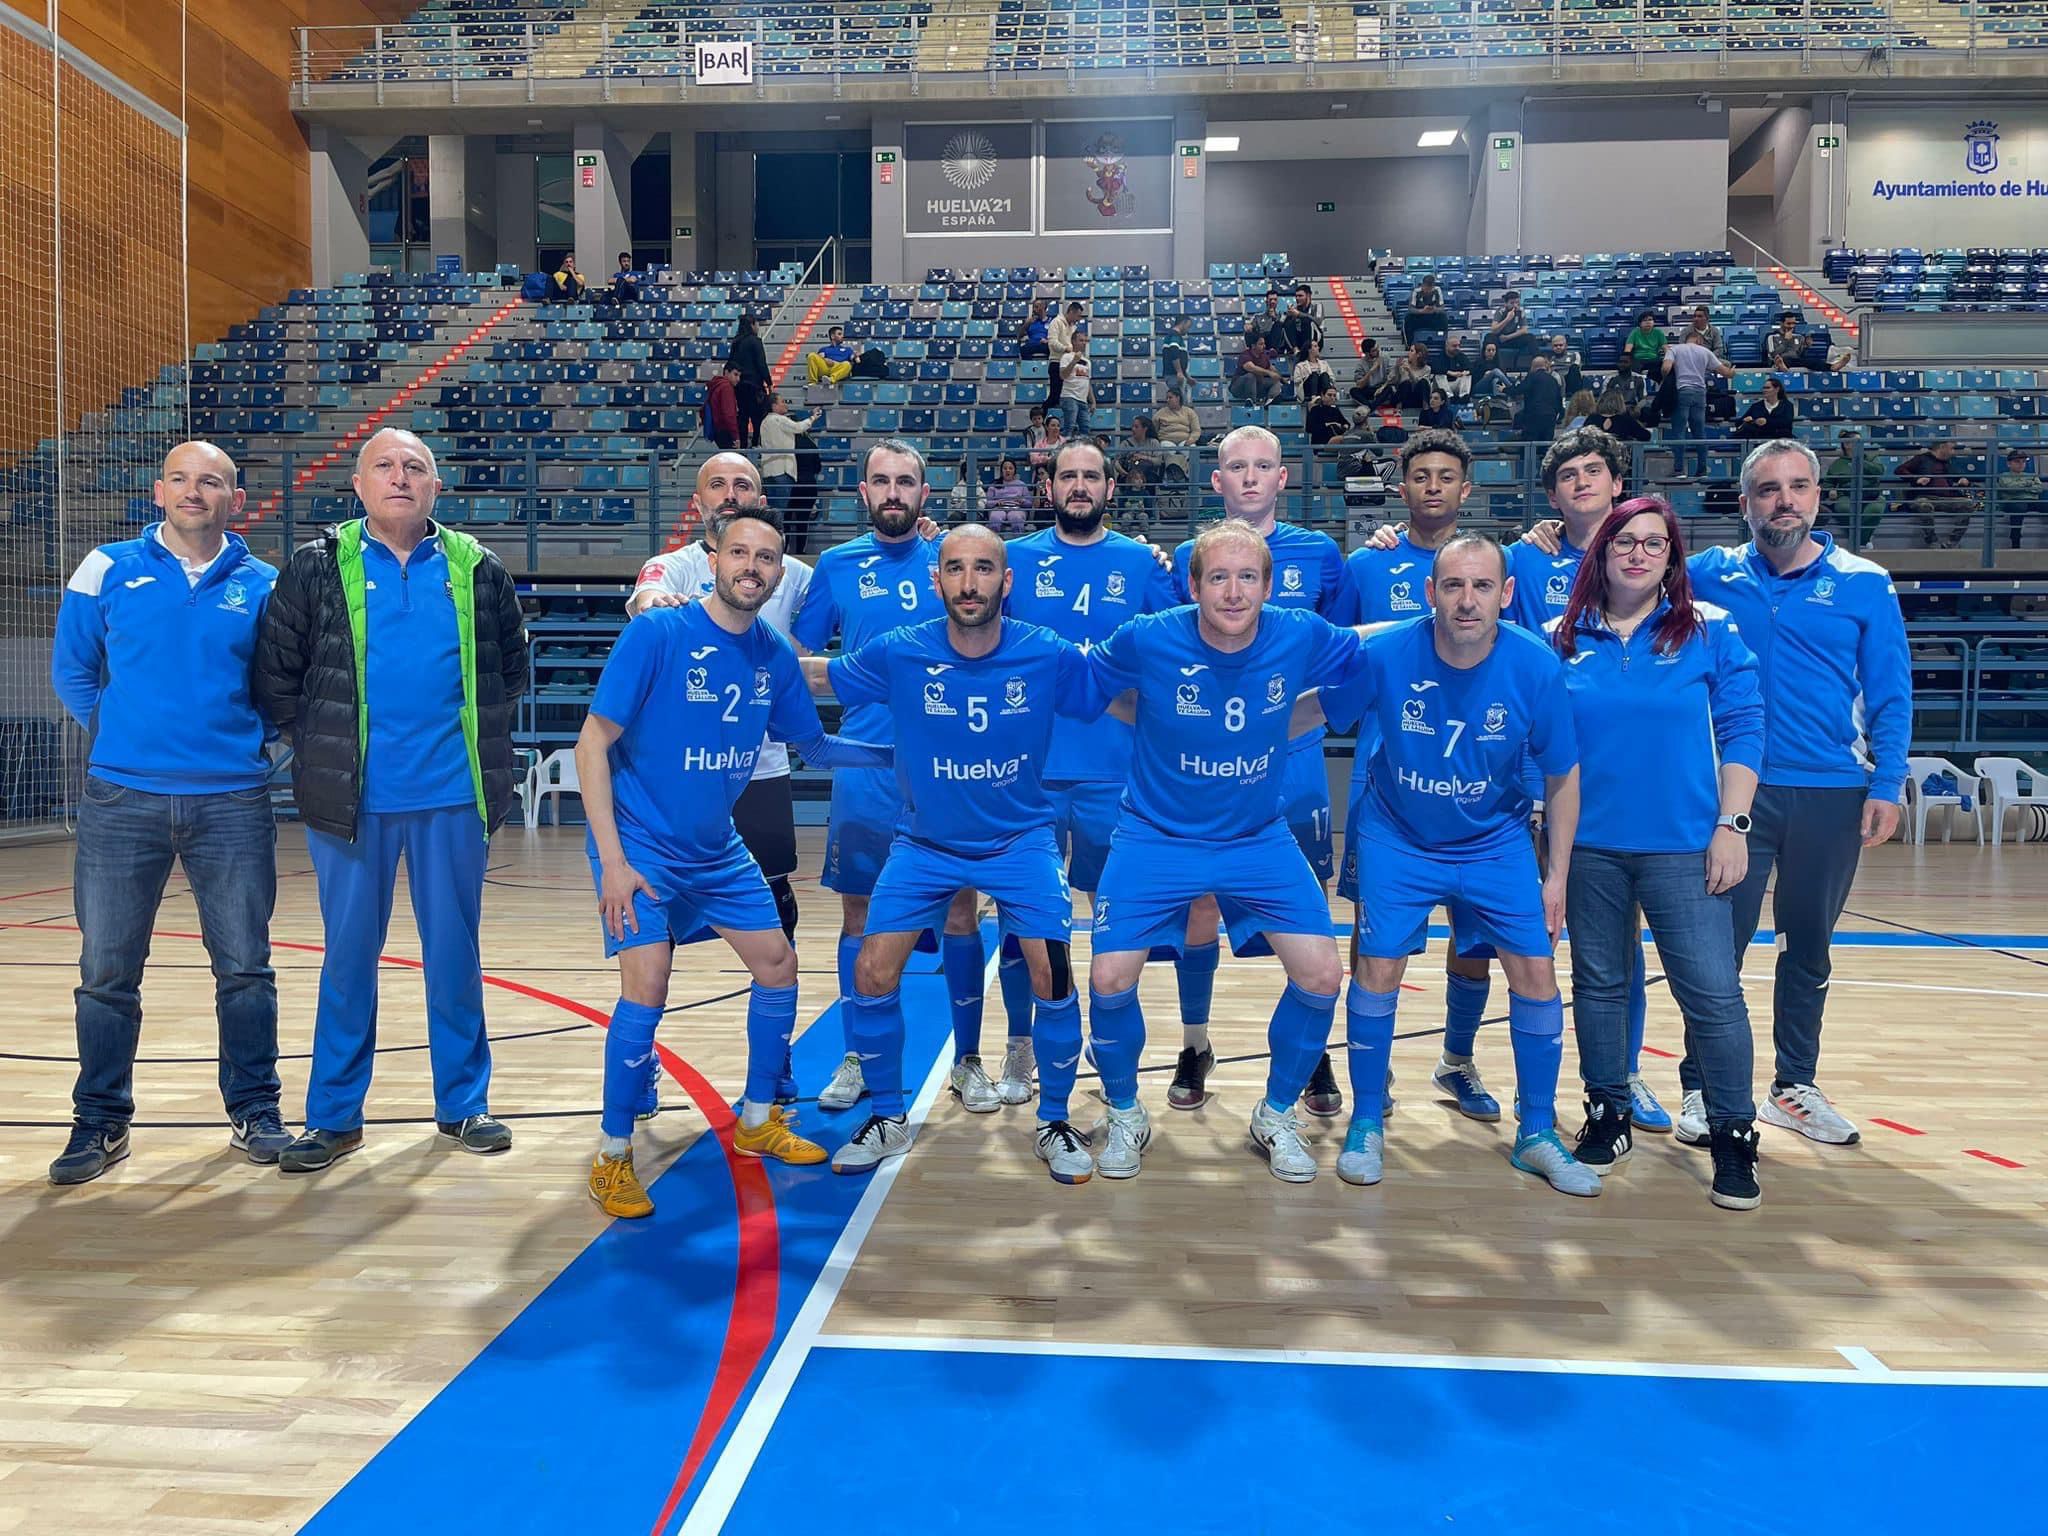 El Club Deportivo Sordos de Huelva conquista su undécimo título consecutivo de campeón de España de fútbol sala 